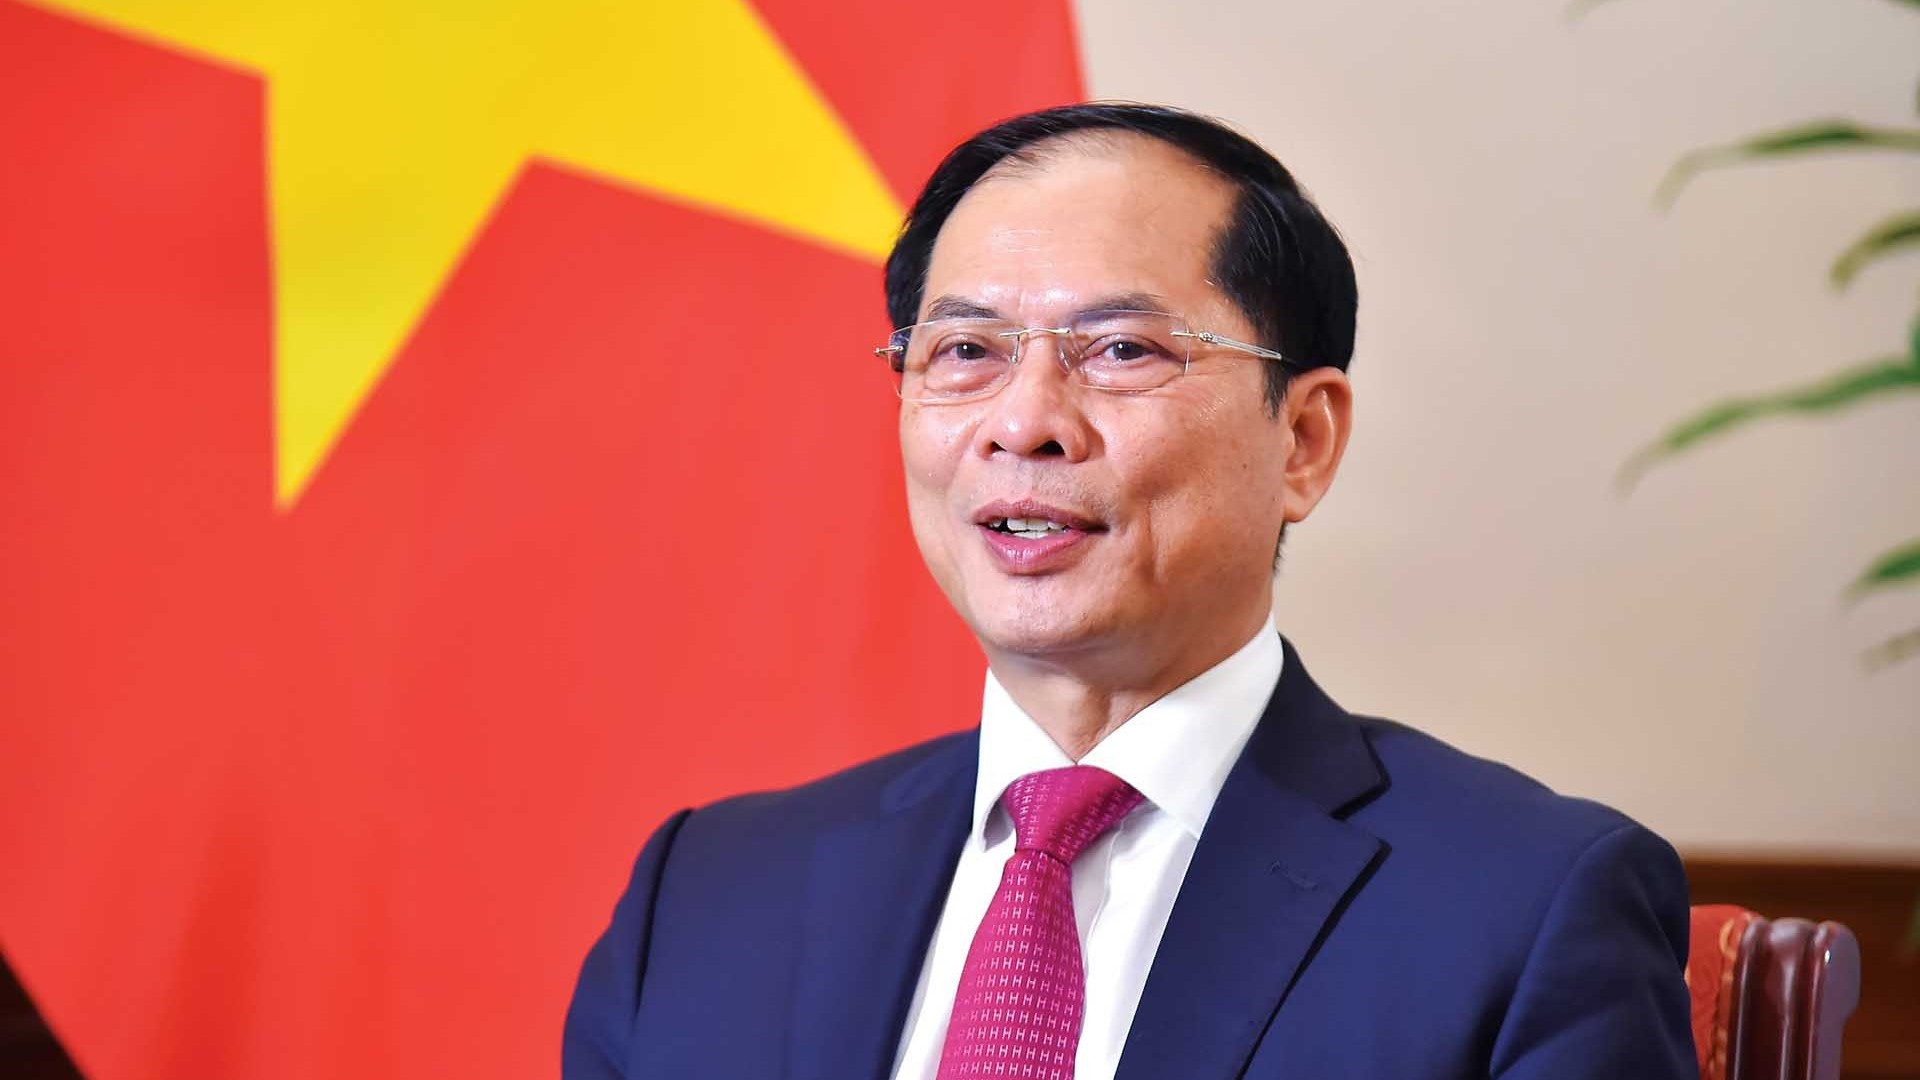 Thủ tướng Phạm Minh Chính tham dự Hội nghị thượng đỉnh G7 mở rộng: Biểu hiện sống động của sự tin cậy